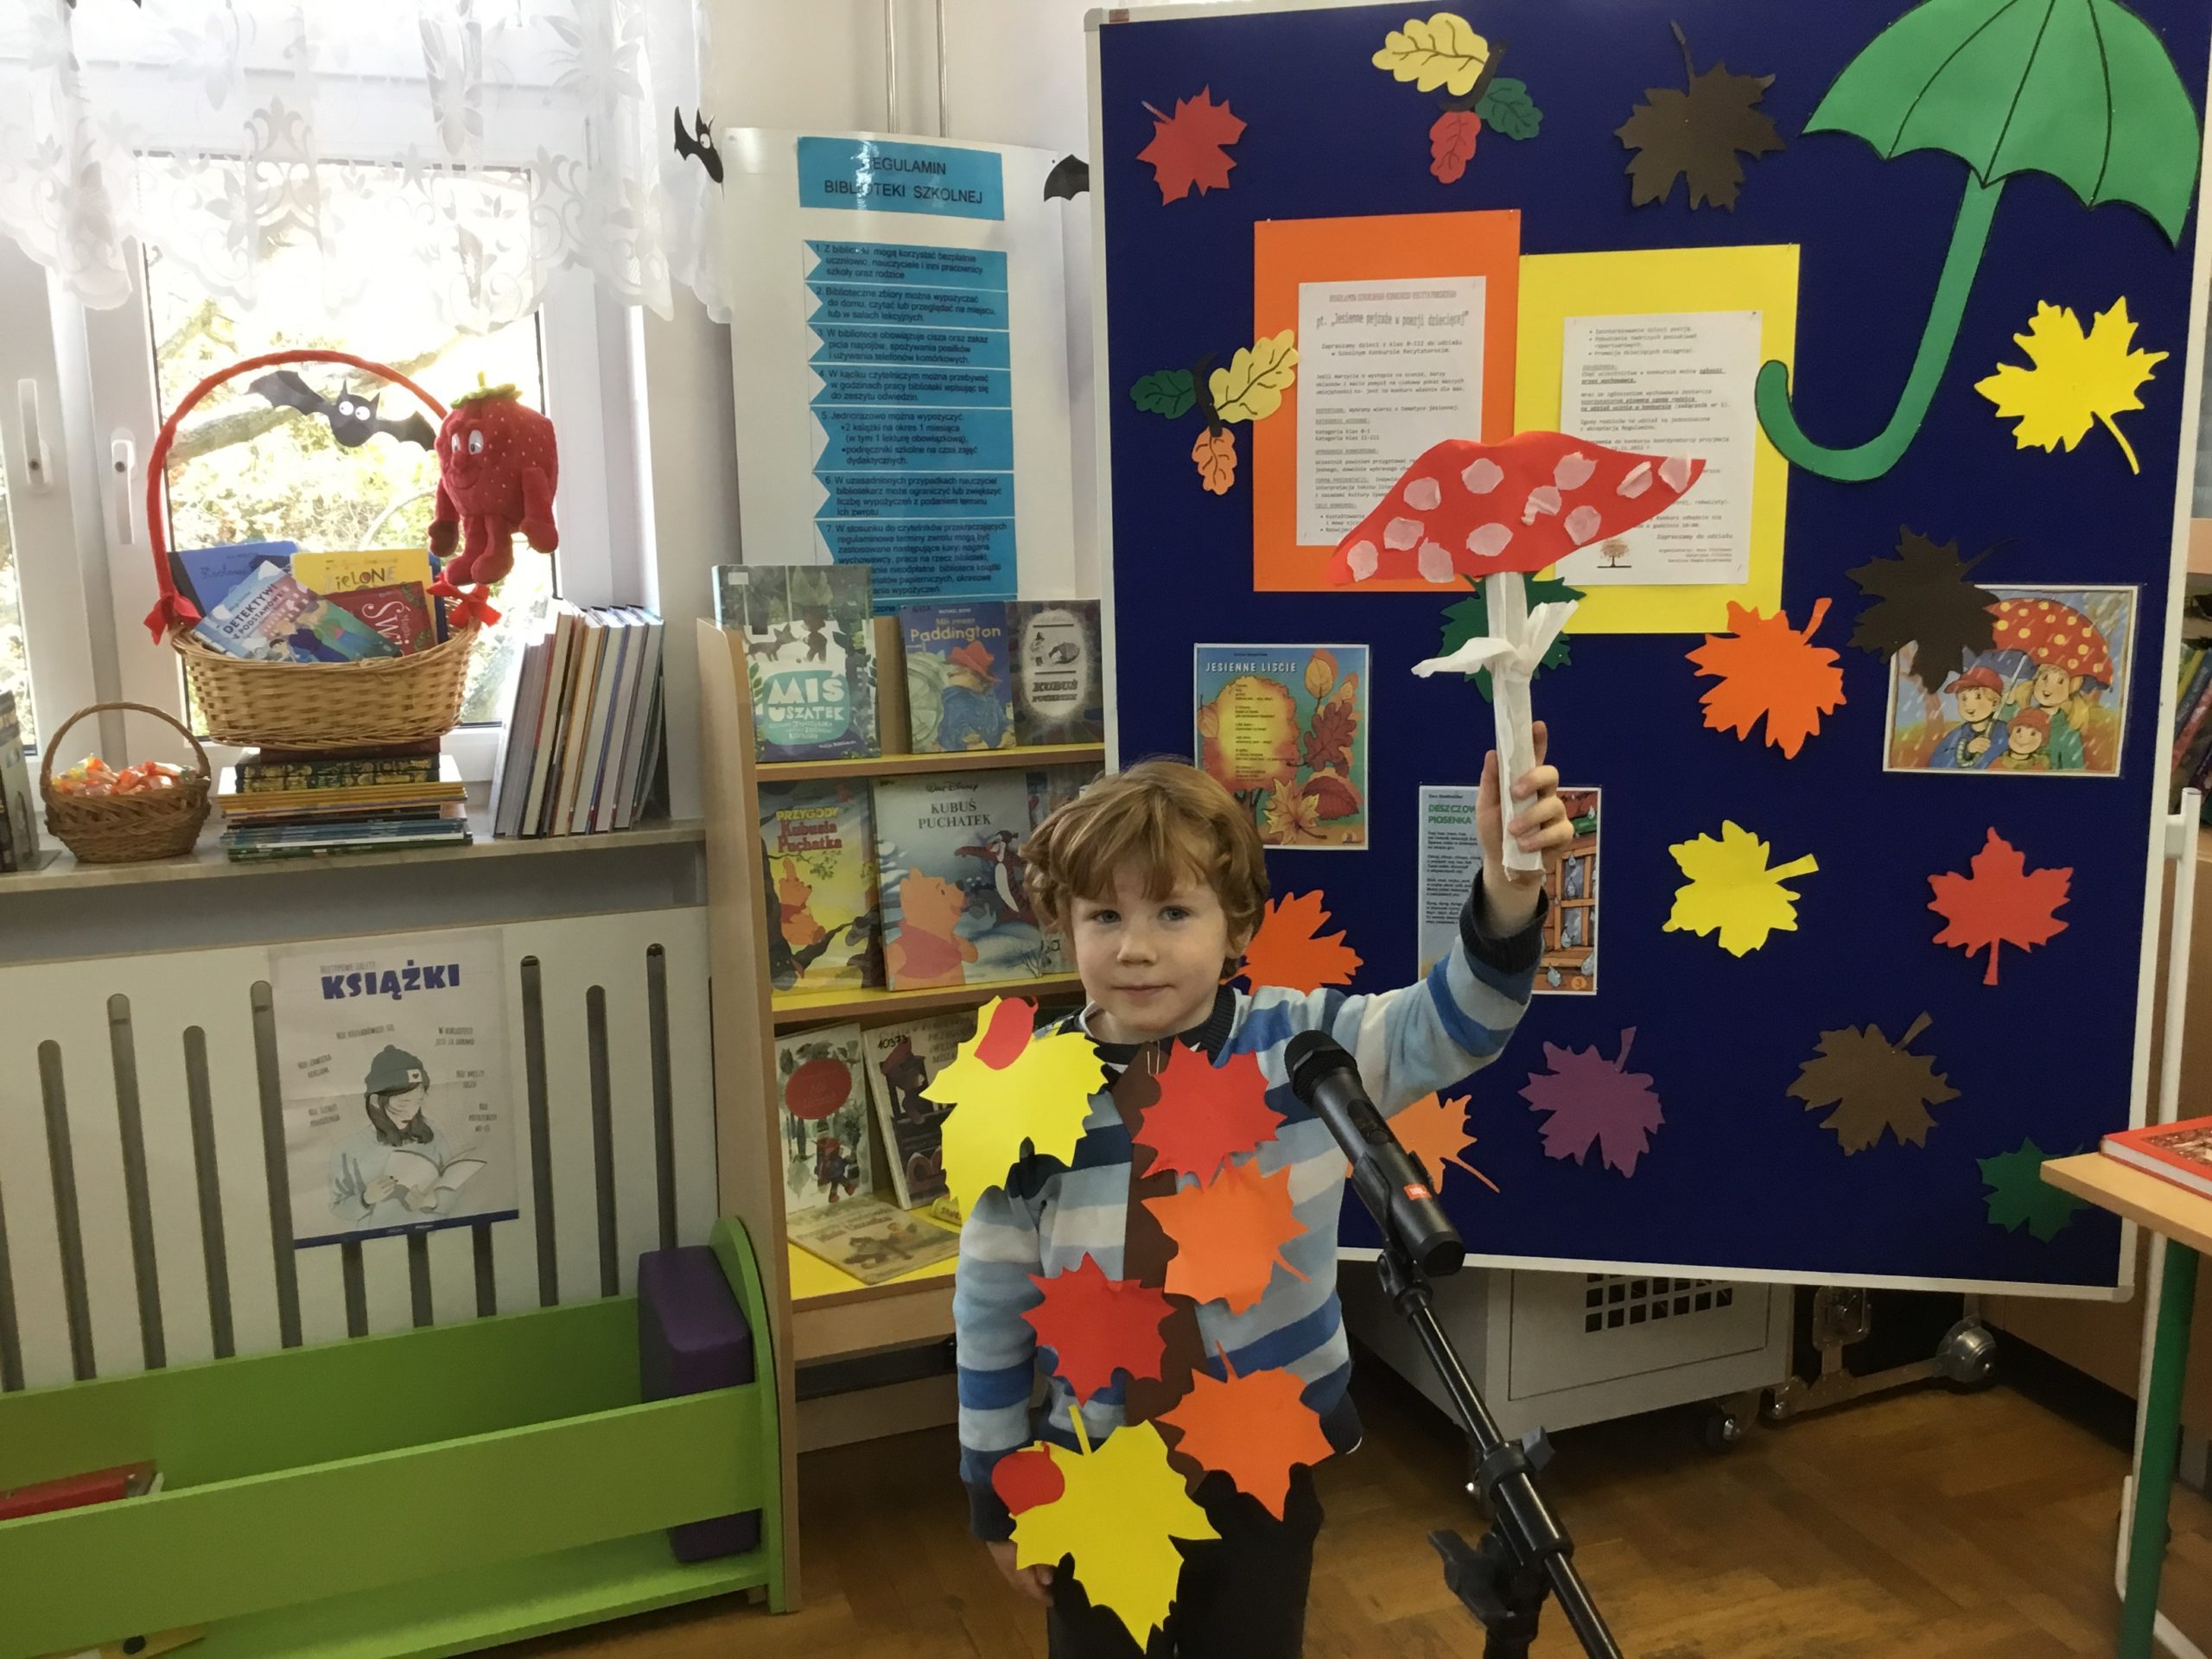 chłopiec, który orzymał 1 miejsce podczas występu w bibliotece szkolnej, w tle tablica informująca o konkursie, na parapecie kosz z nagrodami